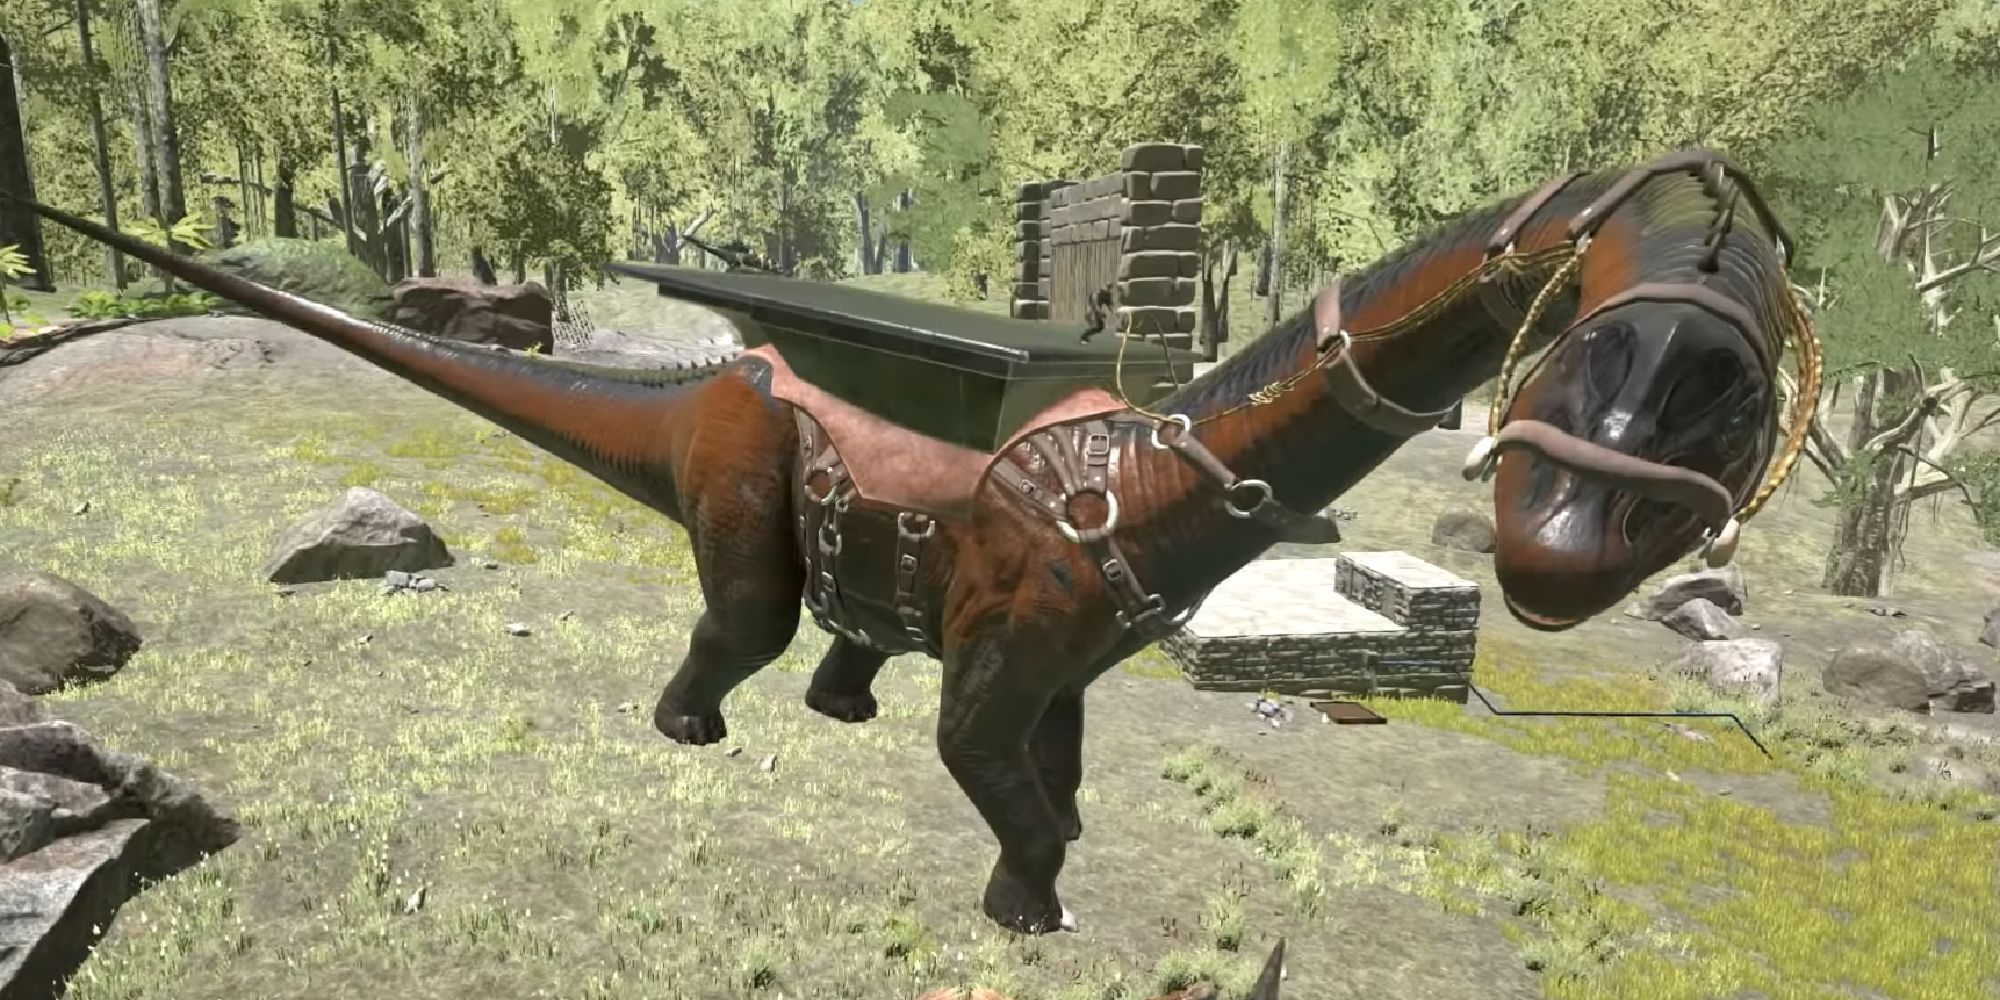 brontosaurus wearing a platform saddle